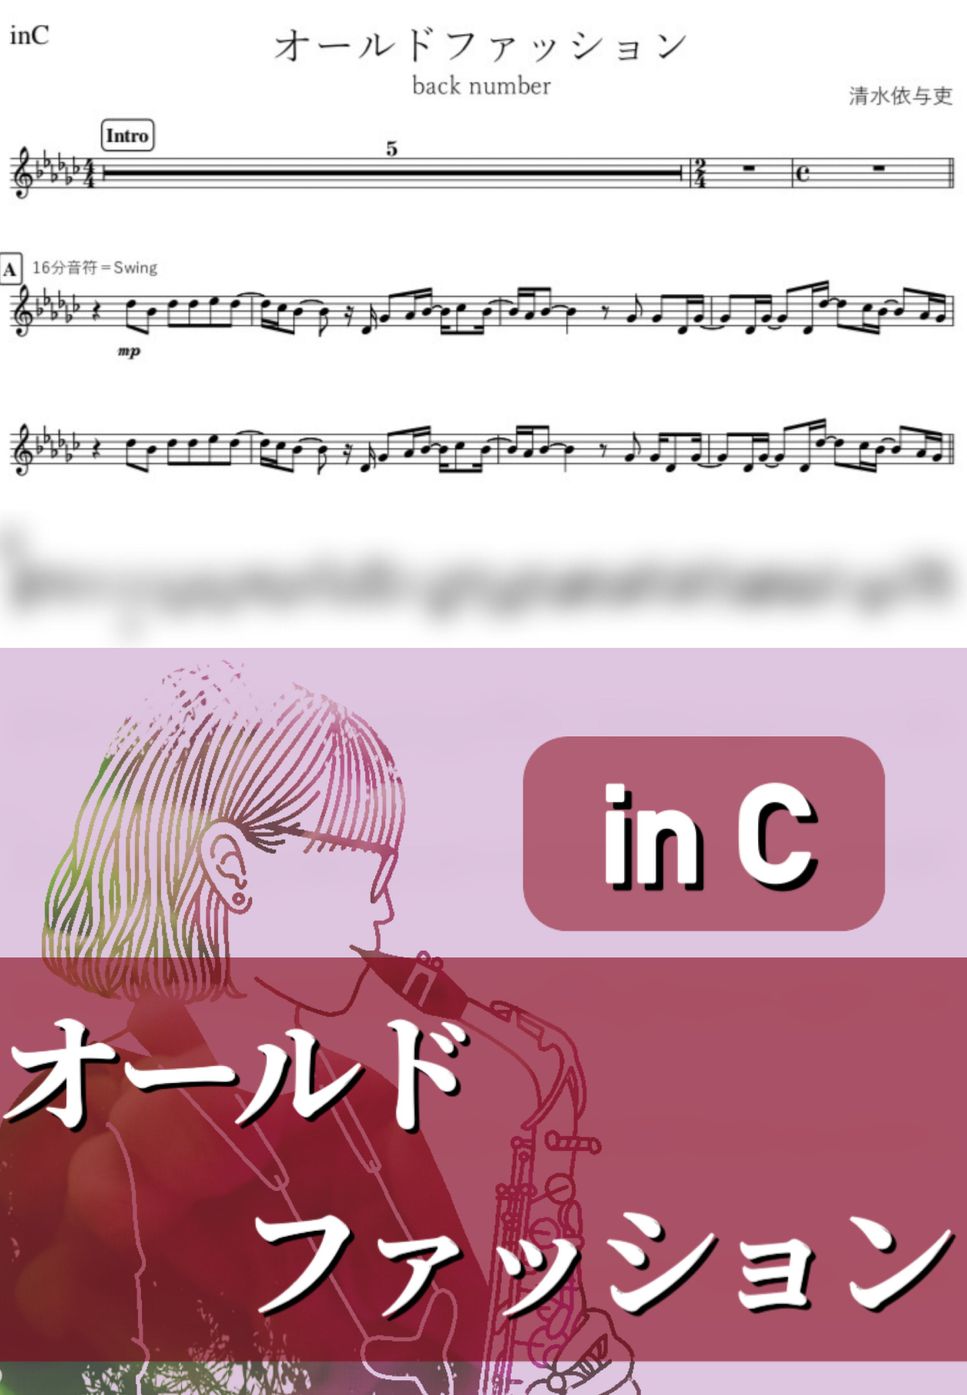 back number - オールドファッション (C) by kanamusic